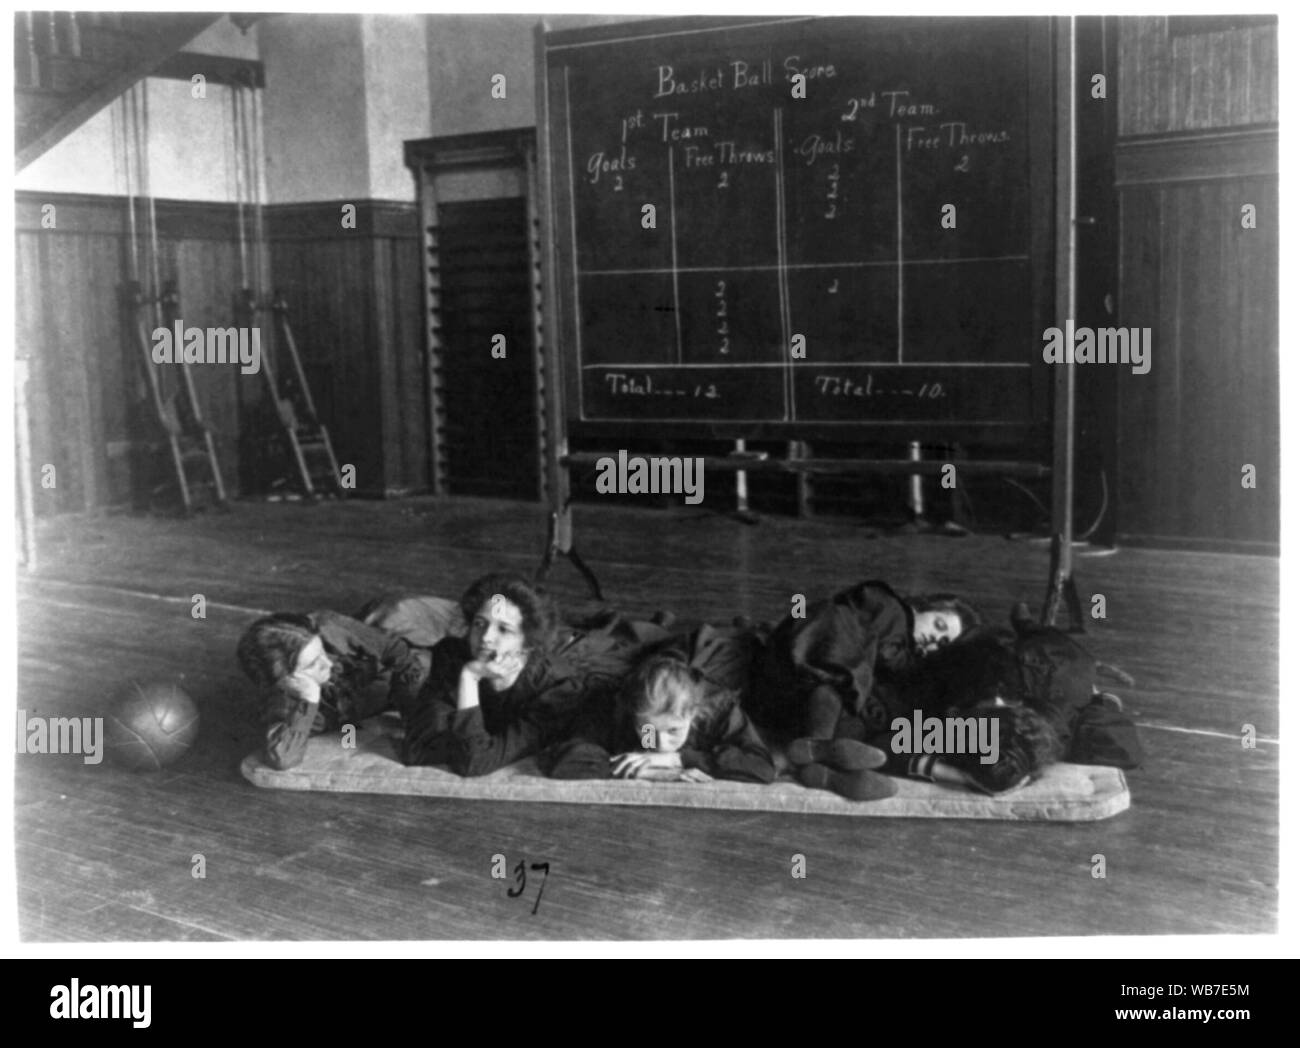 Cinq filles allongé sur le tapis de gym en face de panneau d'affichage, dans l'ouest de High School, Washington, D.C. Résumé/moyenne : 1 tirage photographique : cyanotype. Banque D'Images